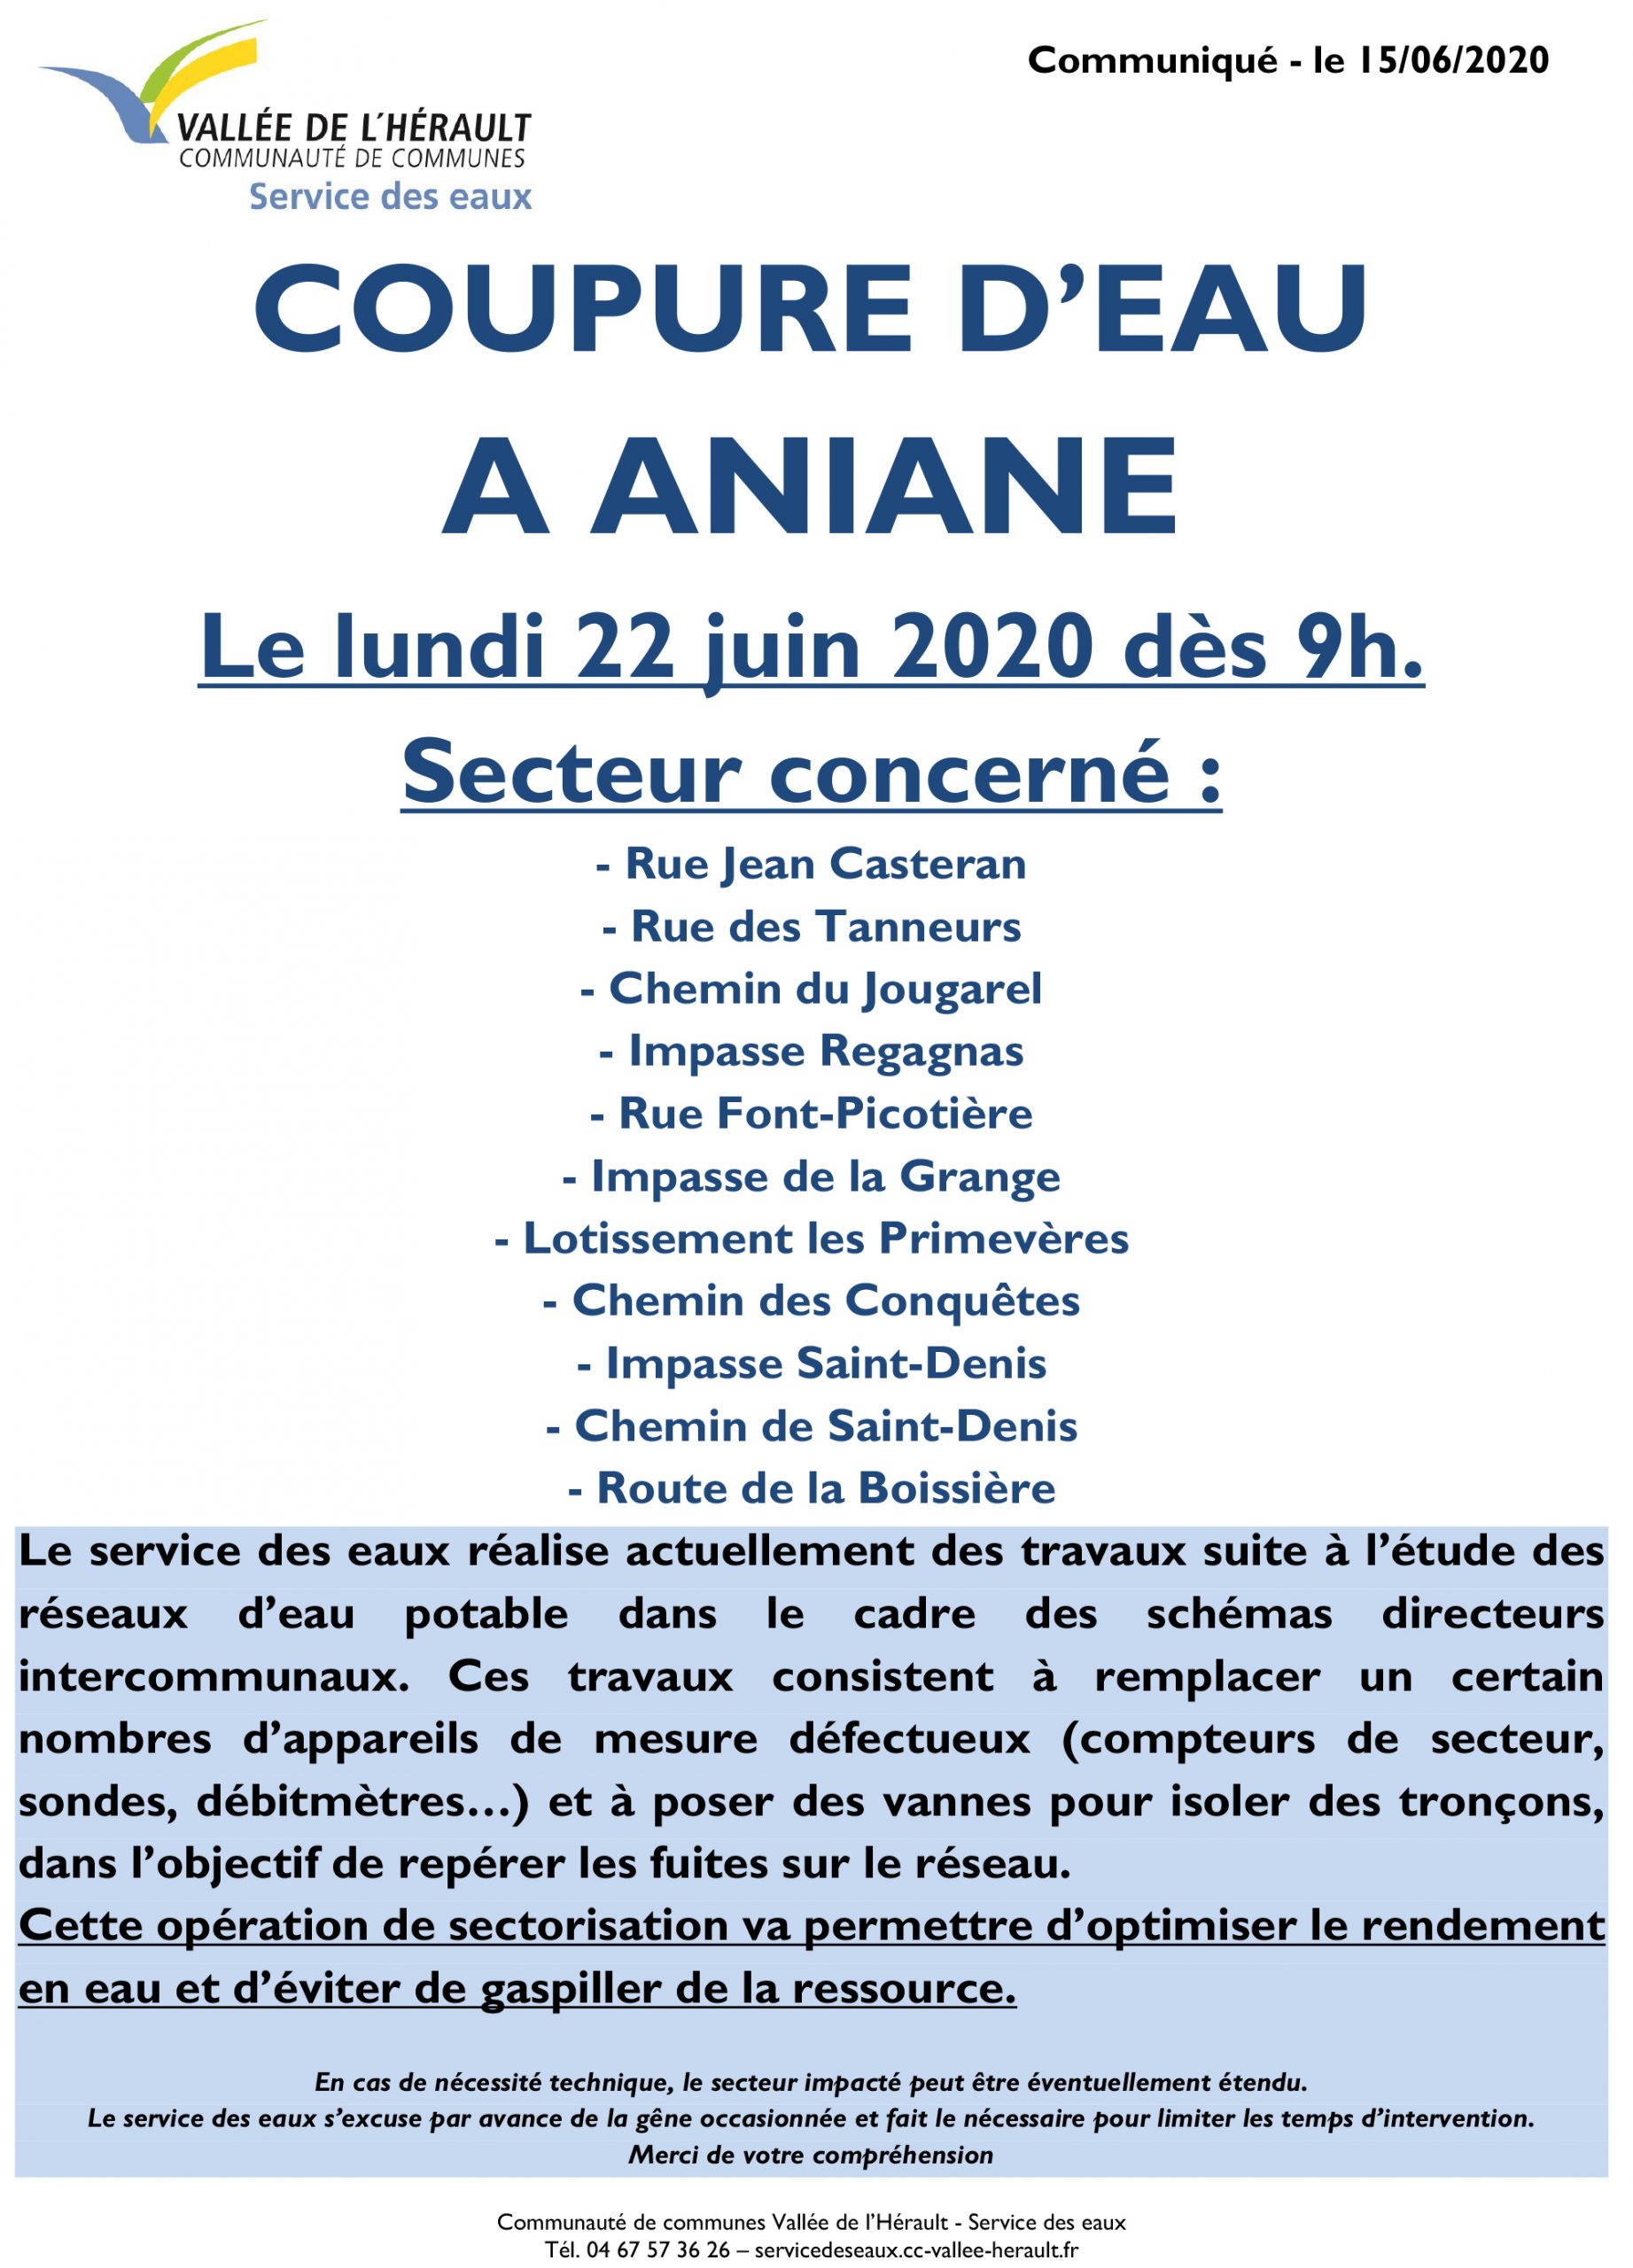 Communiqué Coupure eau 22 06 2020 Aniane ANI06